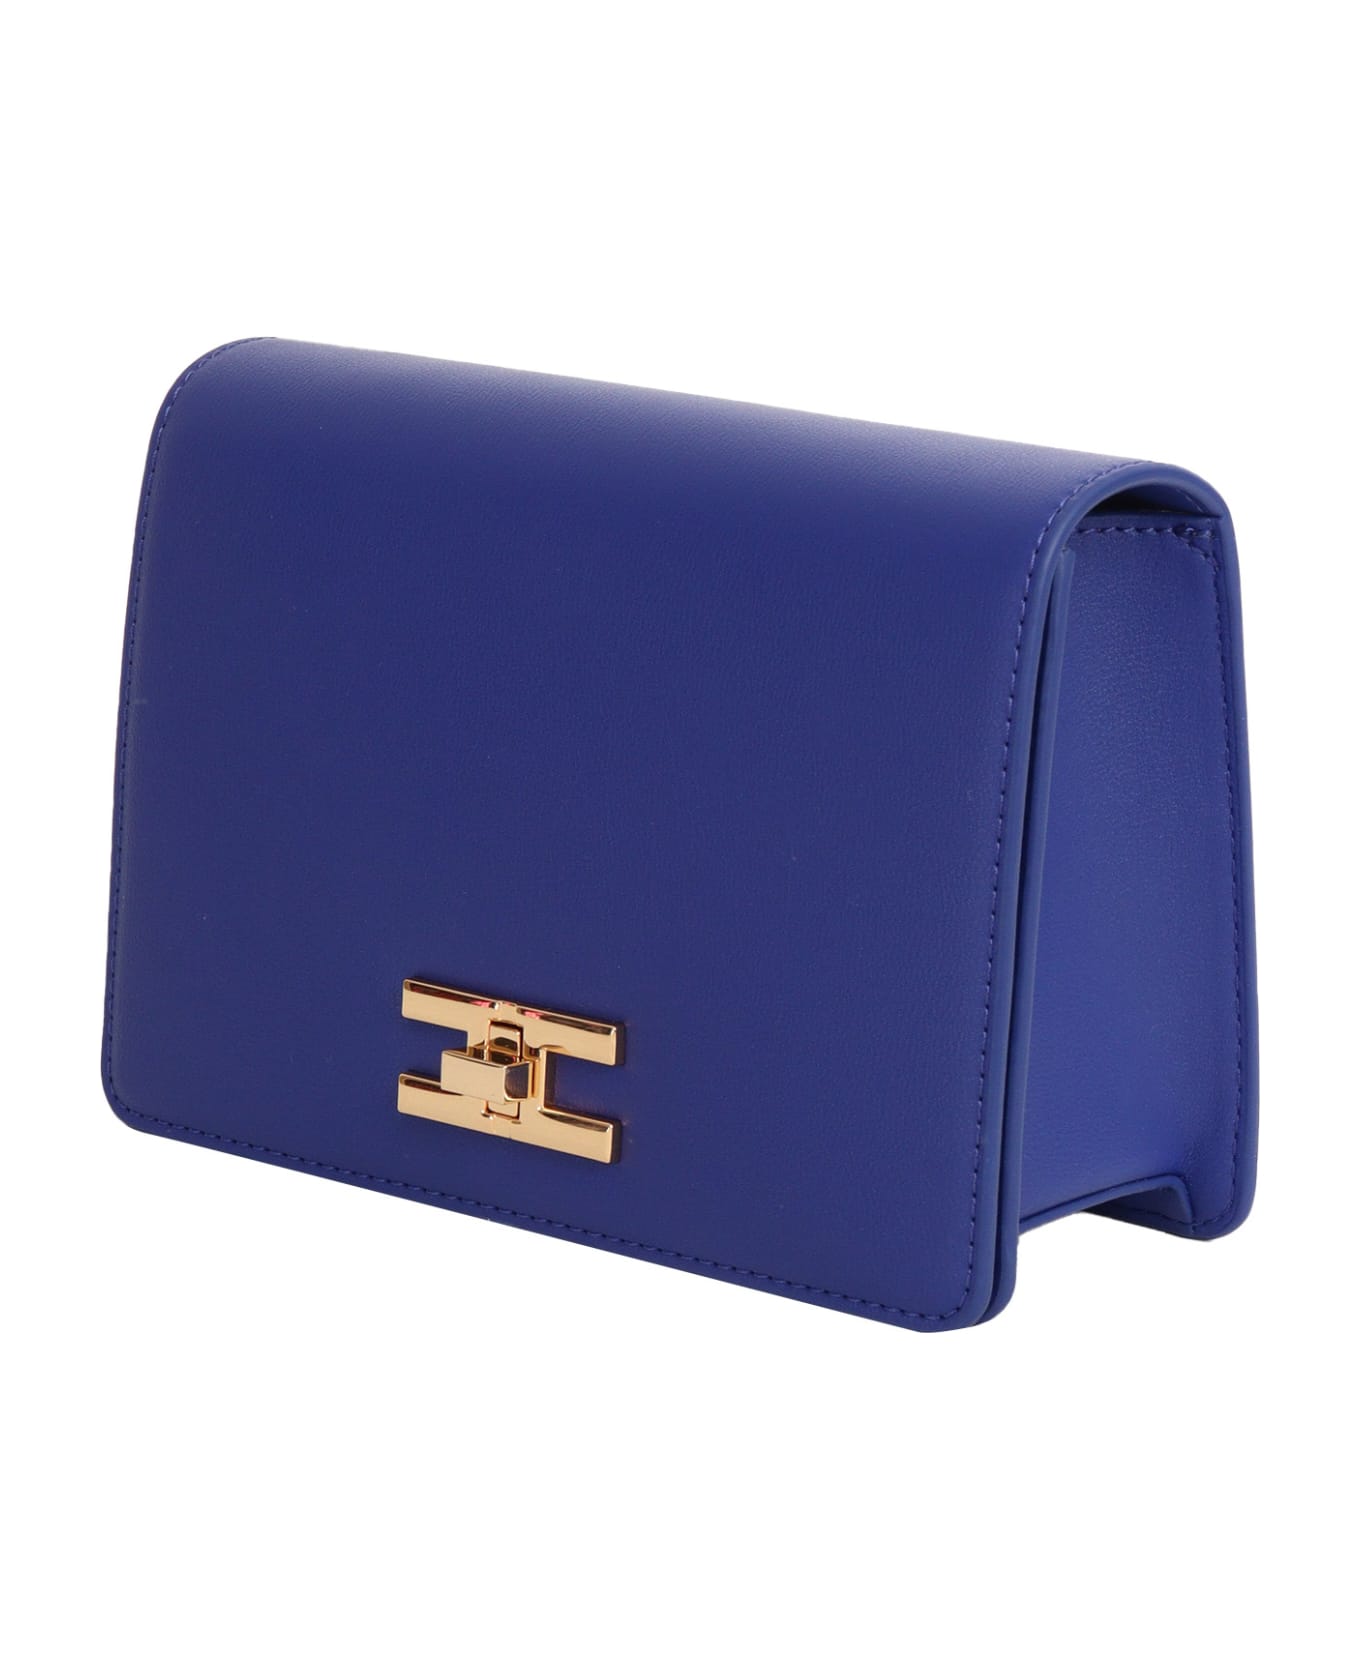 Elisabetta Franchi Blue Shoulder Bag - BLUE